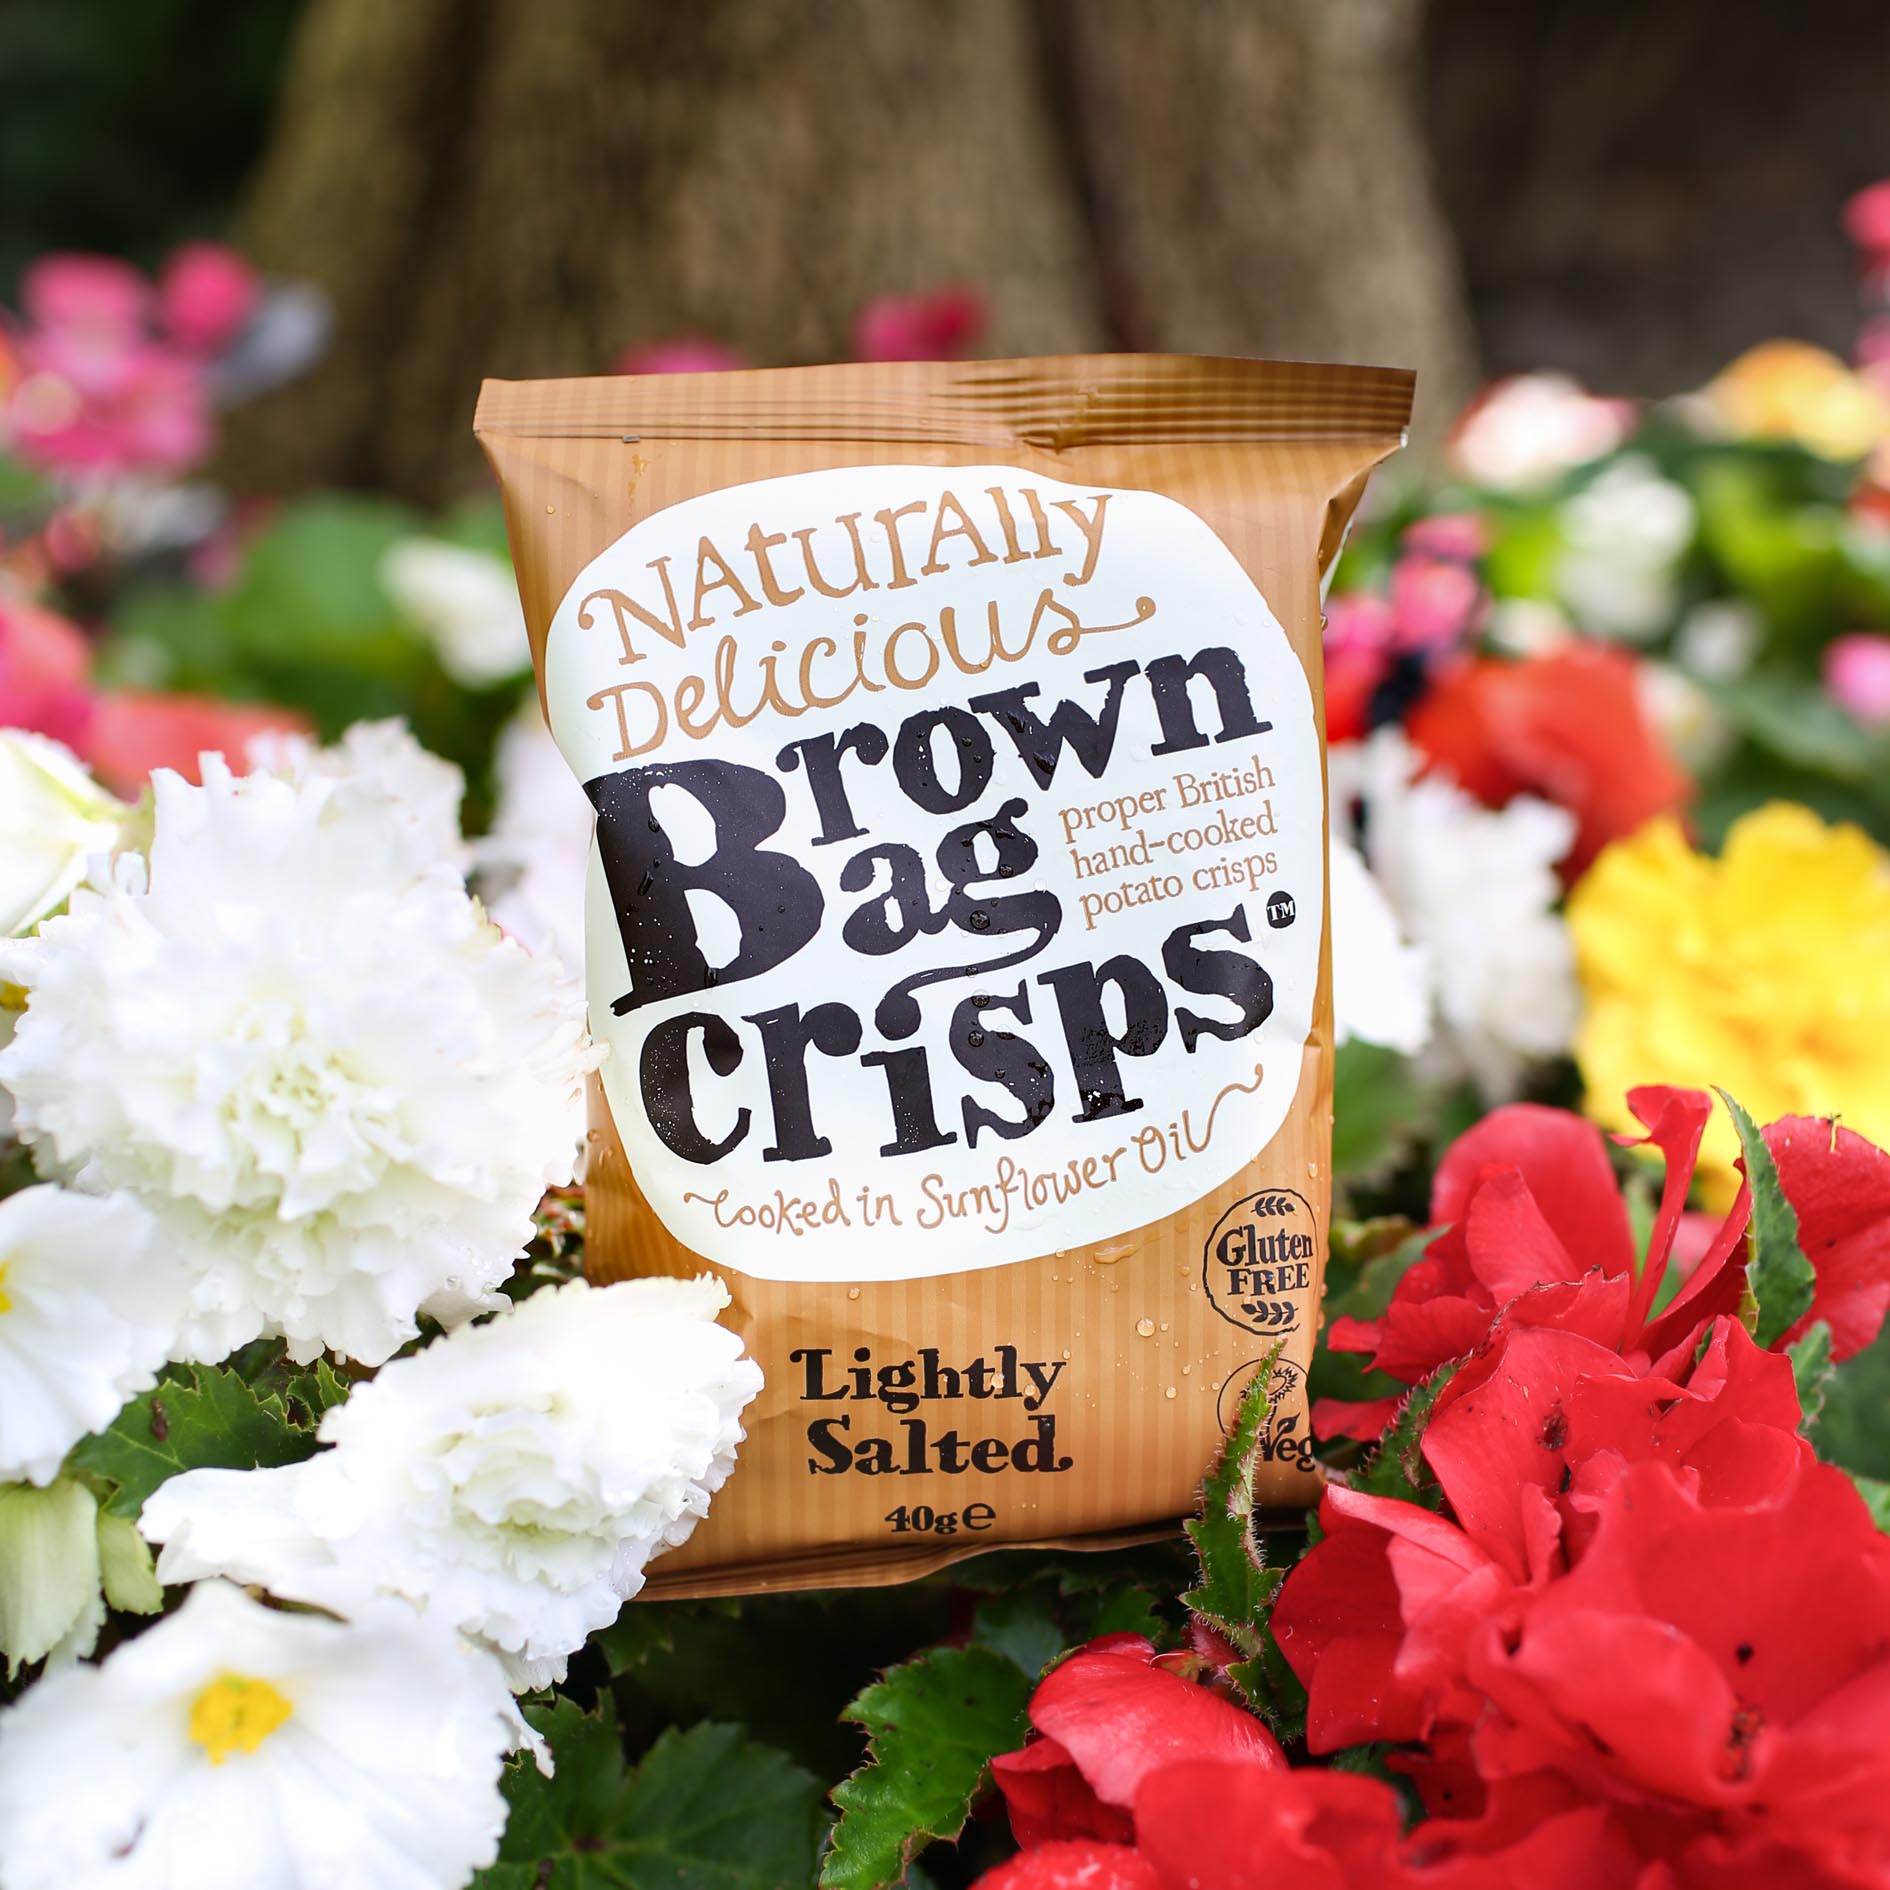 Brown Bag Crisps - Lightly Salted